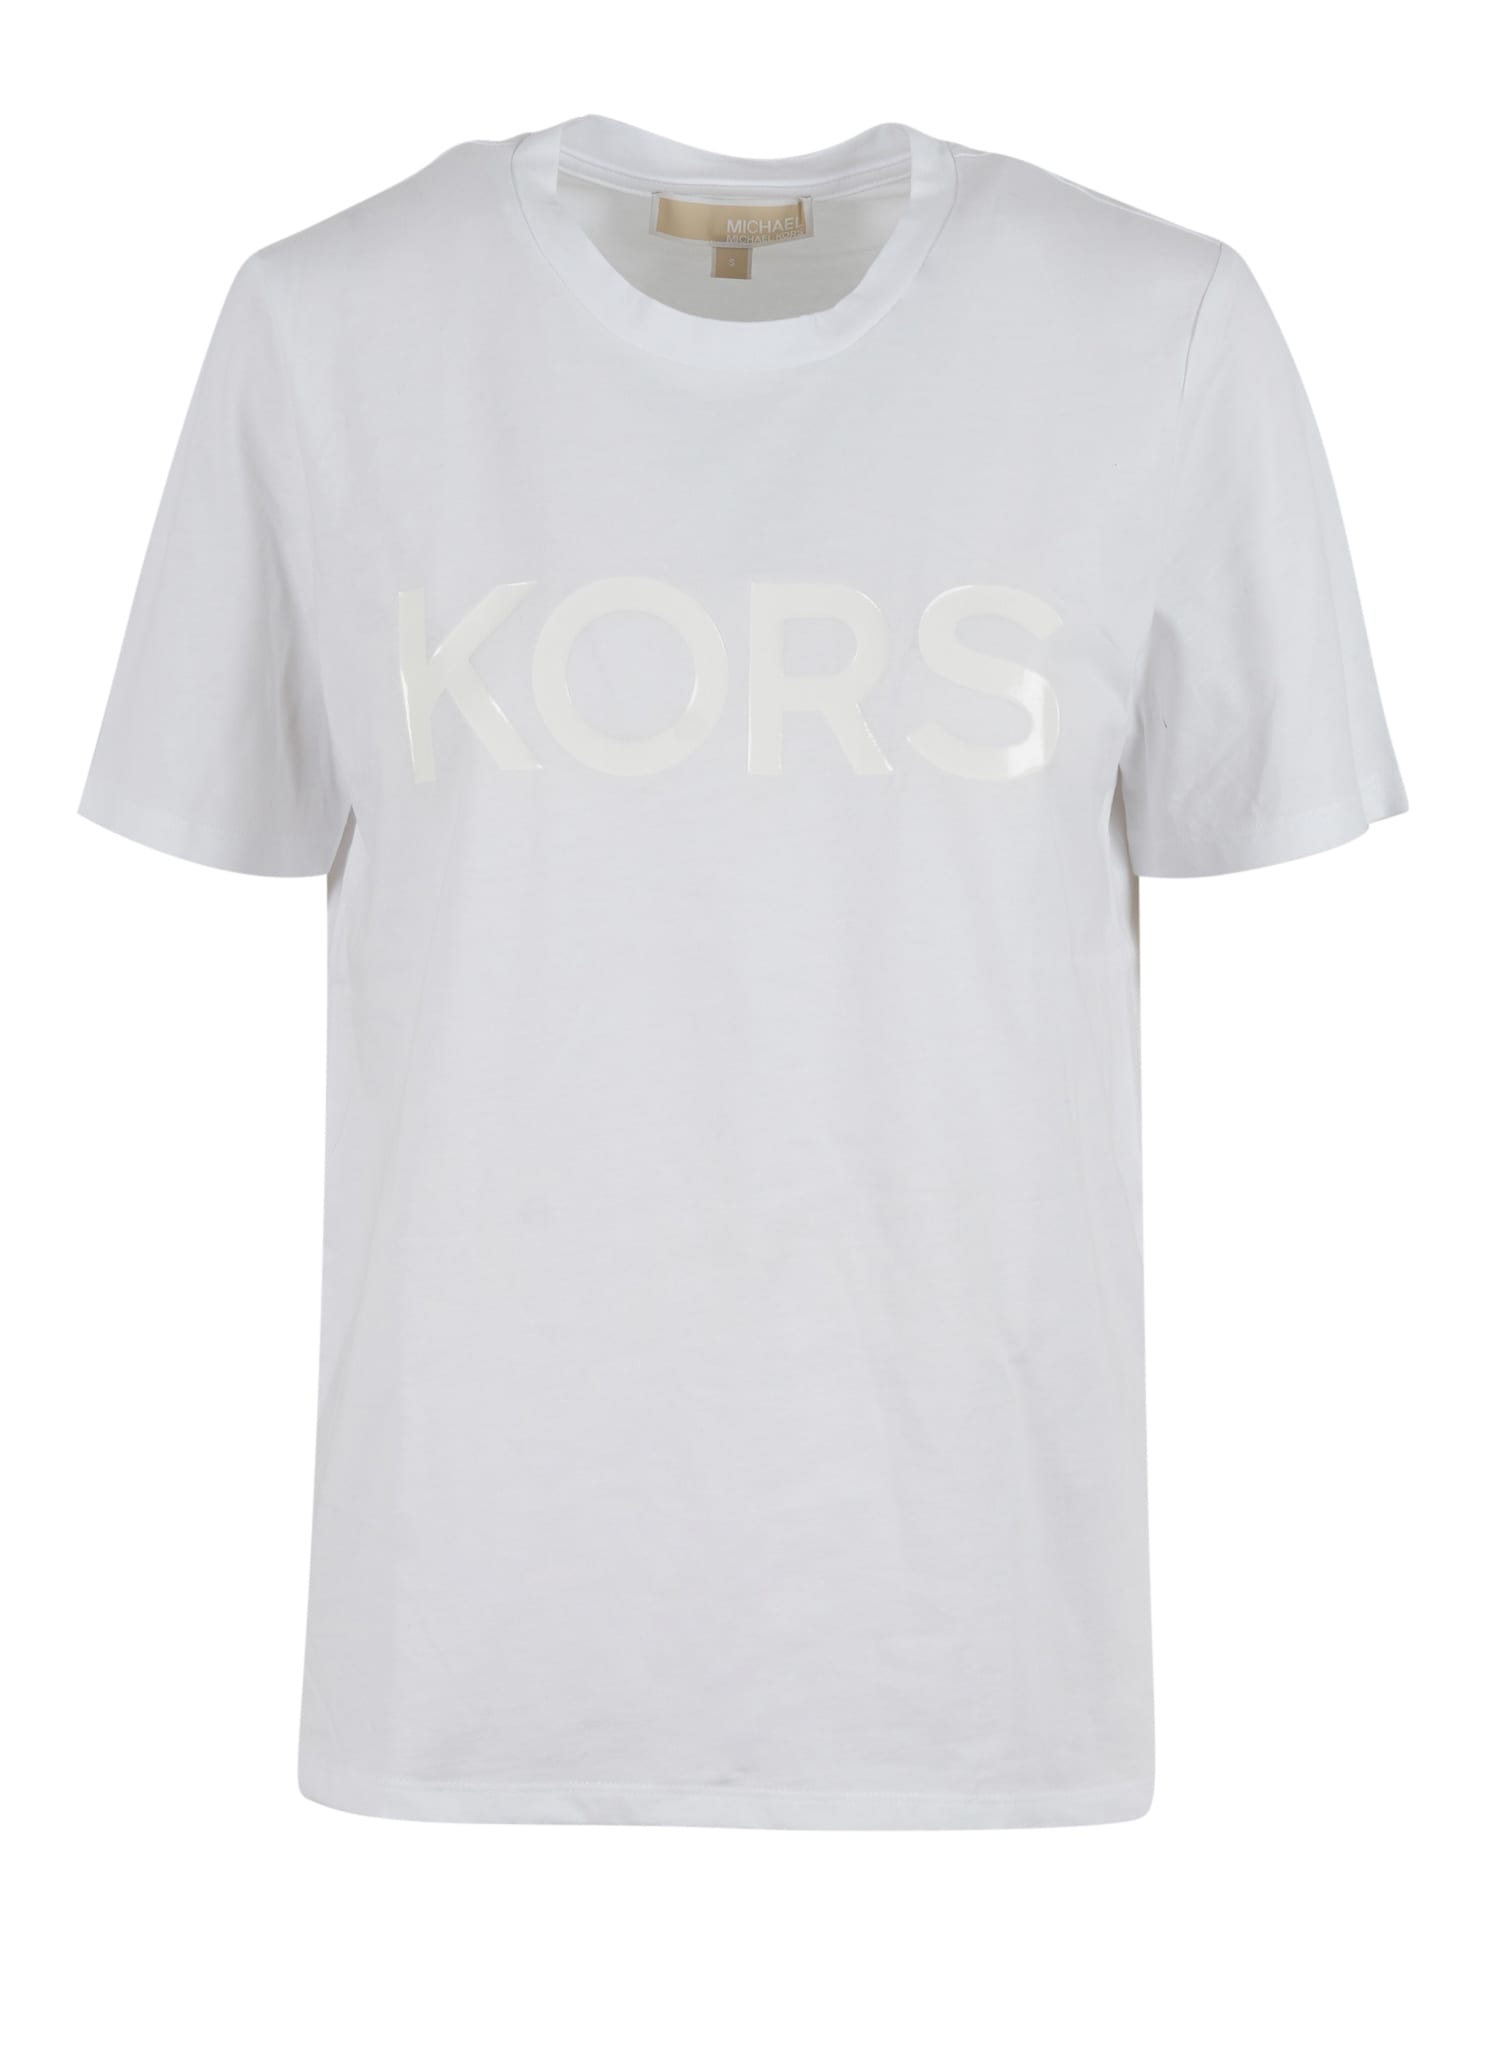 Michael Kors Tonal Kors Classic T-shirt